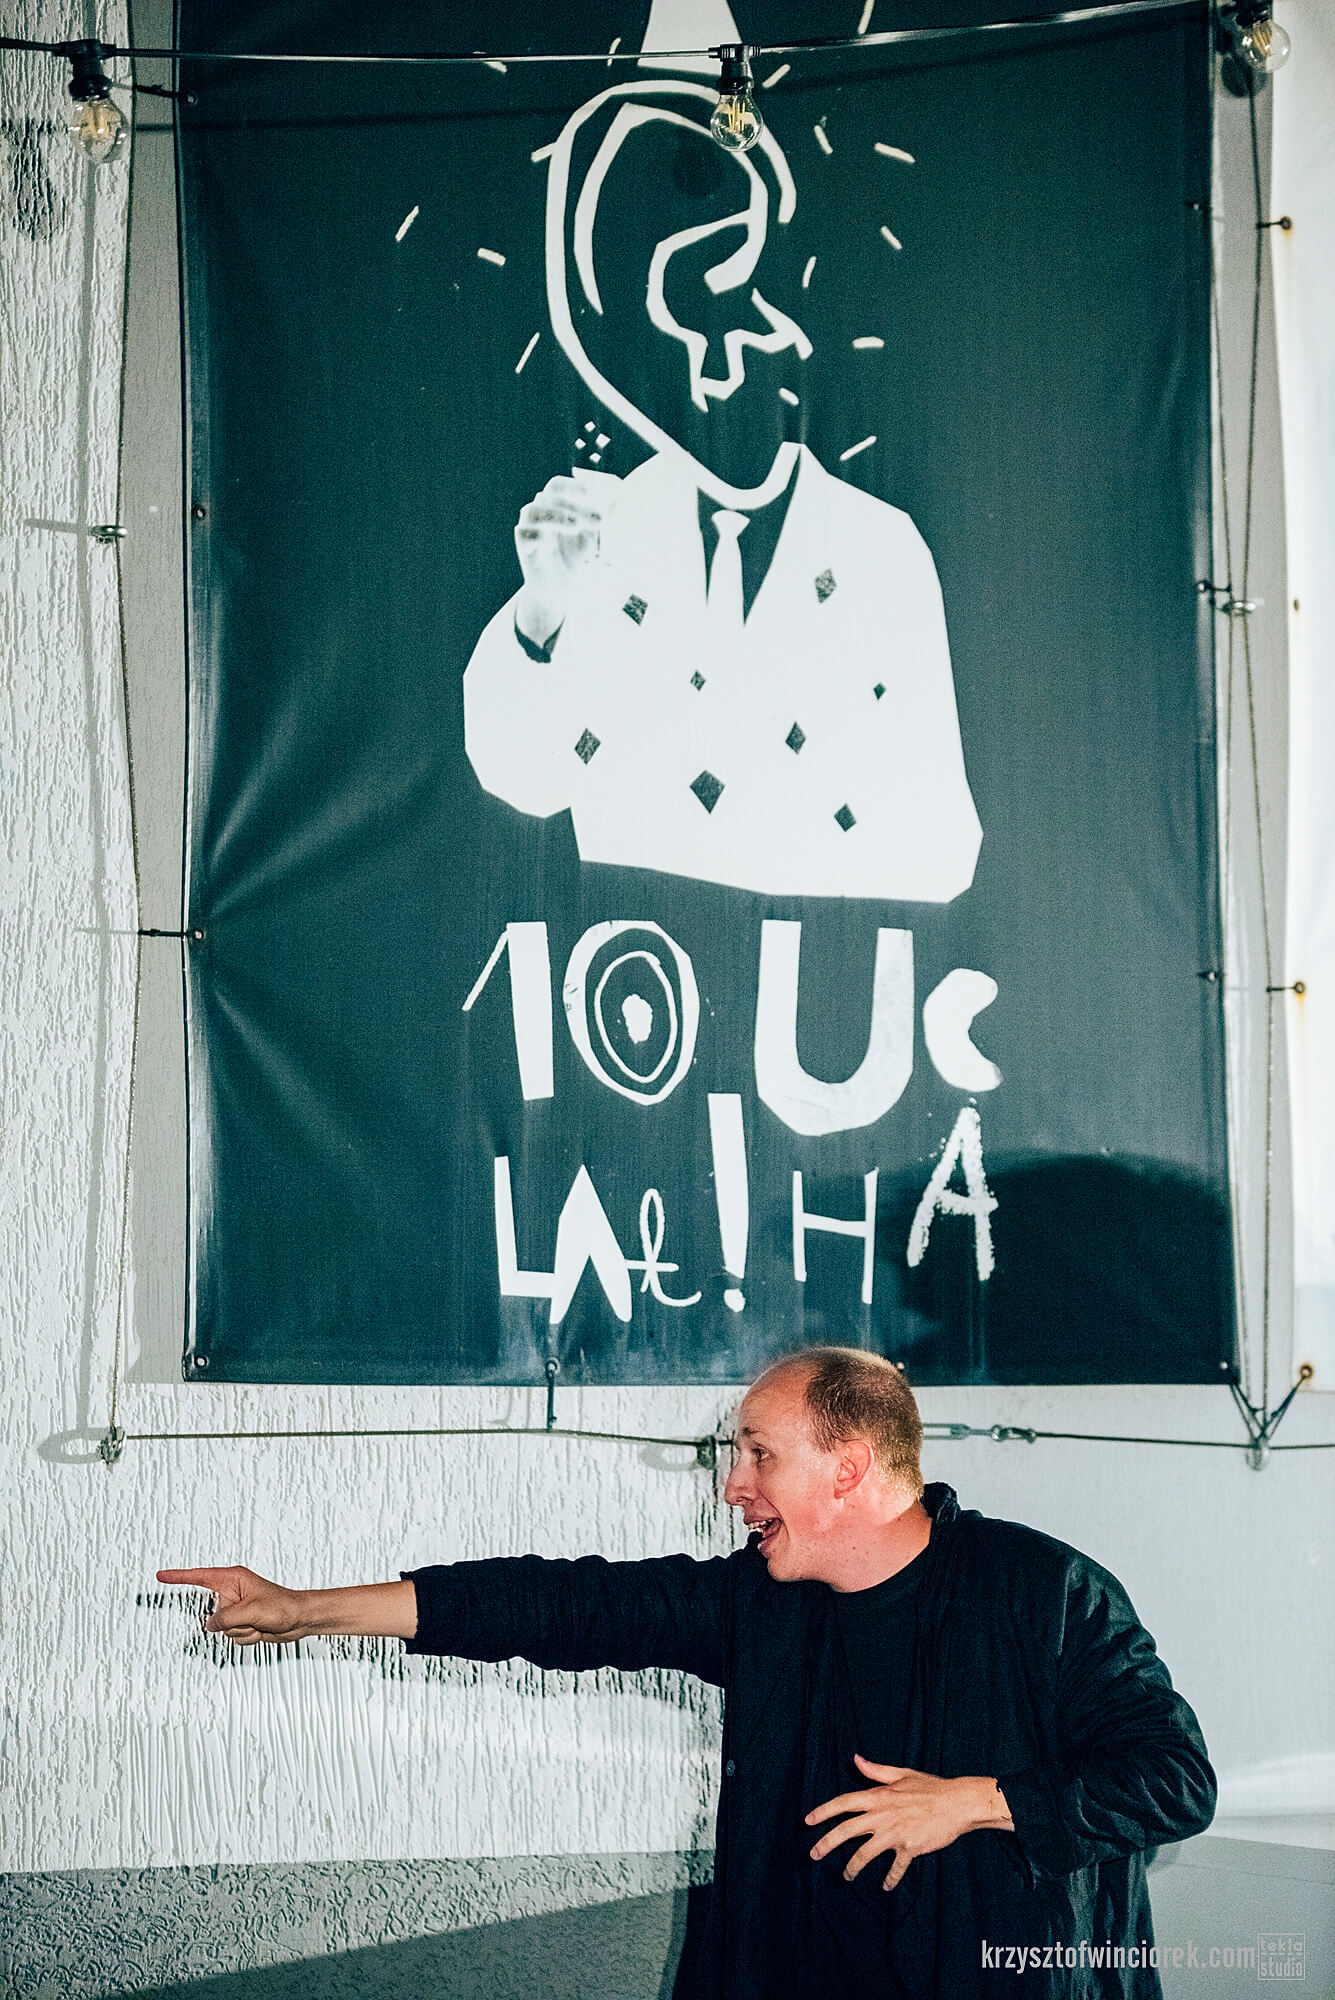 Zdjęcie z festiwalu Pociąg do miasta. Aktor z wyciągniętą w lewo reką i wskazującym palcem. Za nim na ścianie baner z napisem 10 lat ucha.